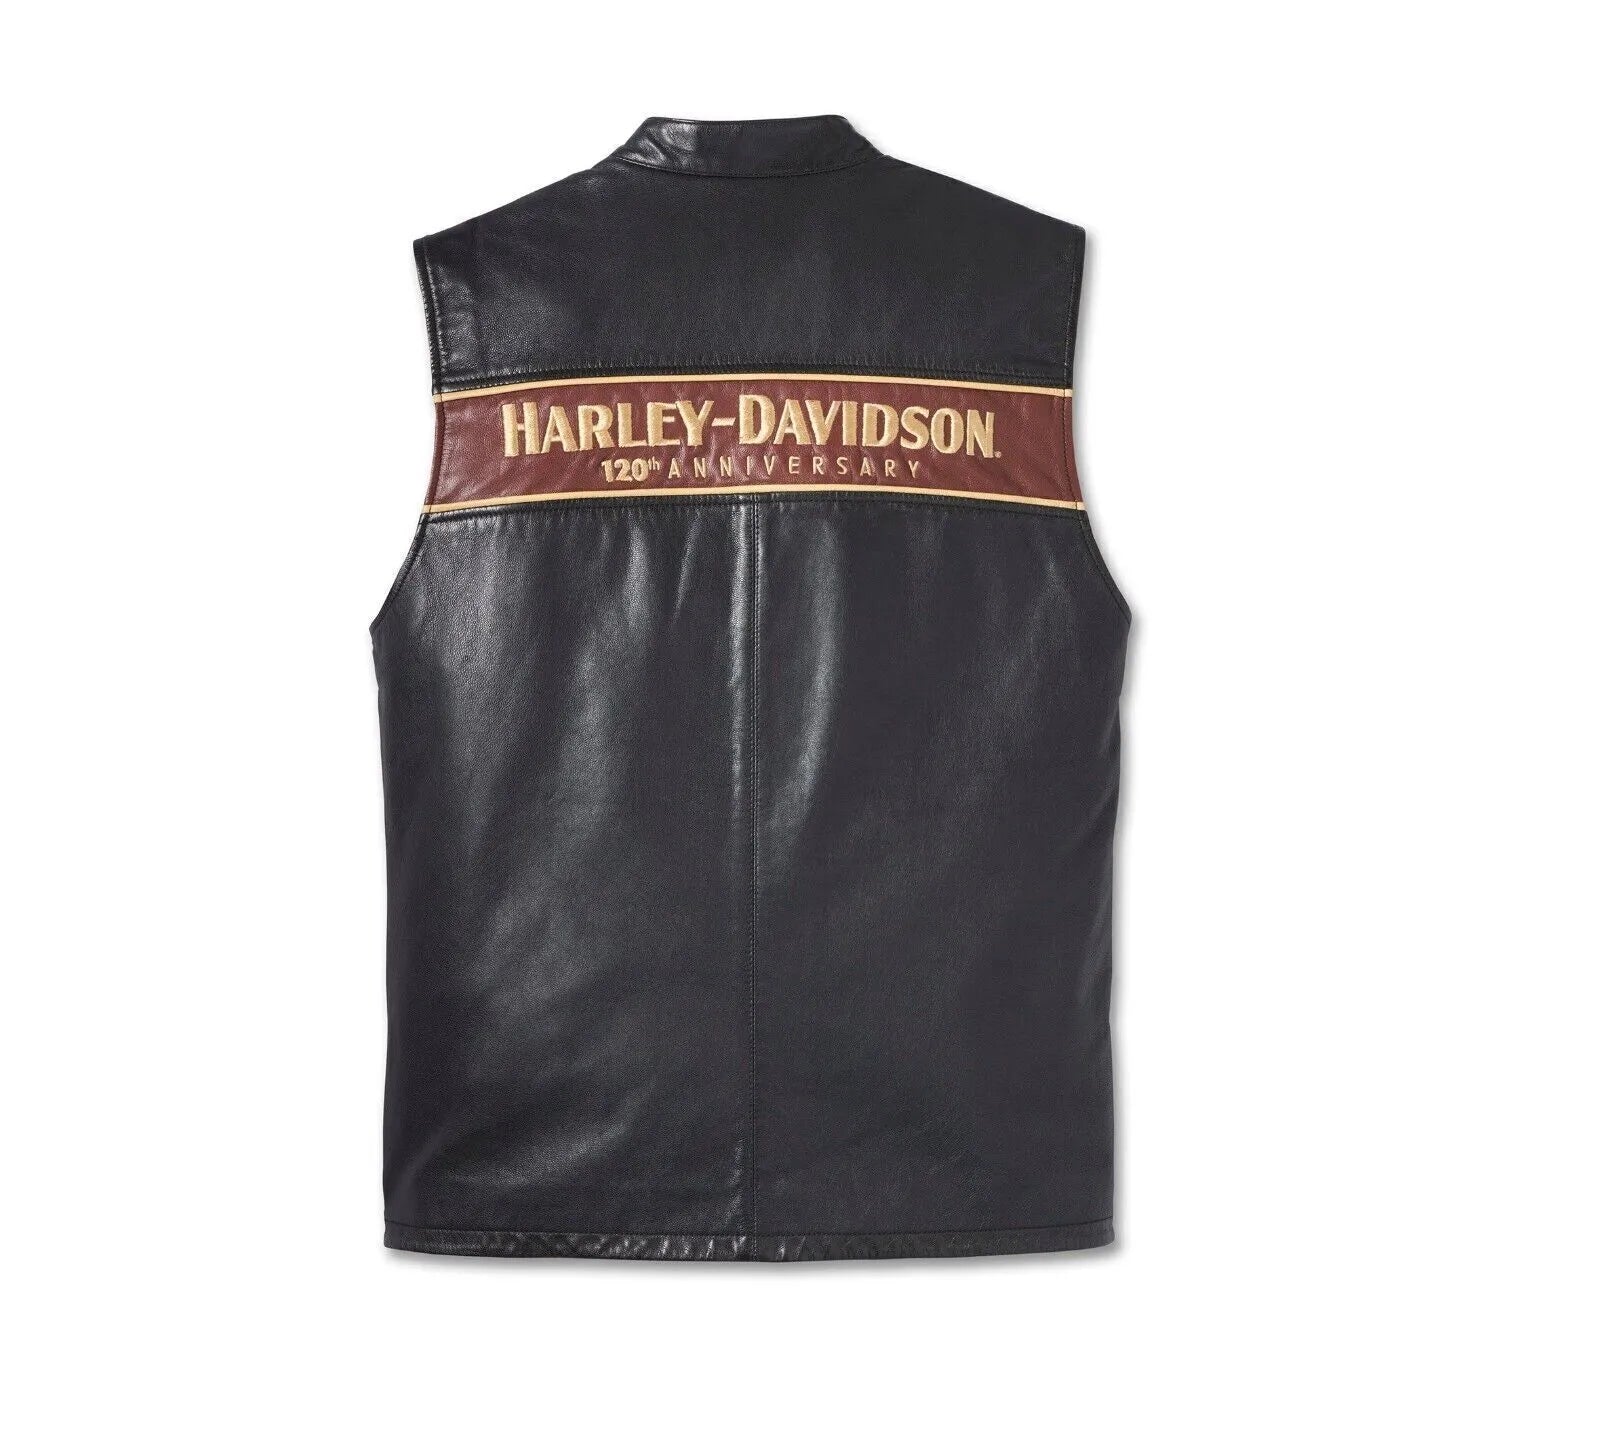 Men's Harley Davidson 120th Anniversary Biker Vest Motorcycle Real Leather Vest